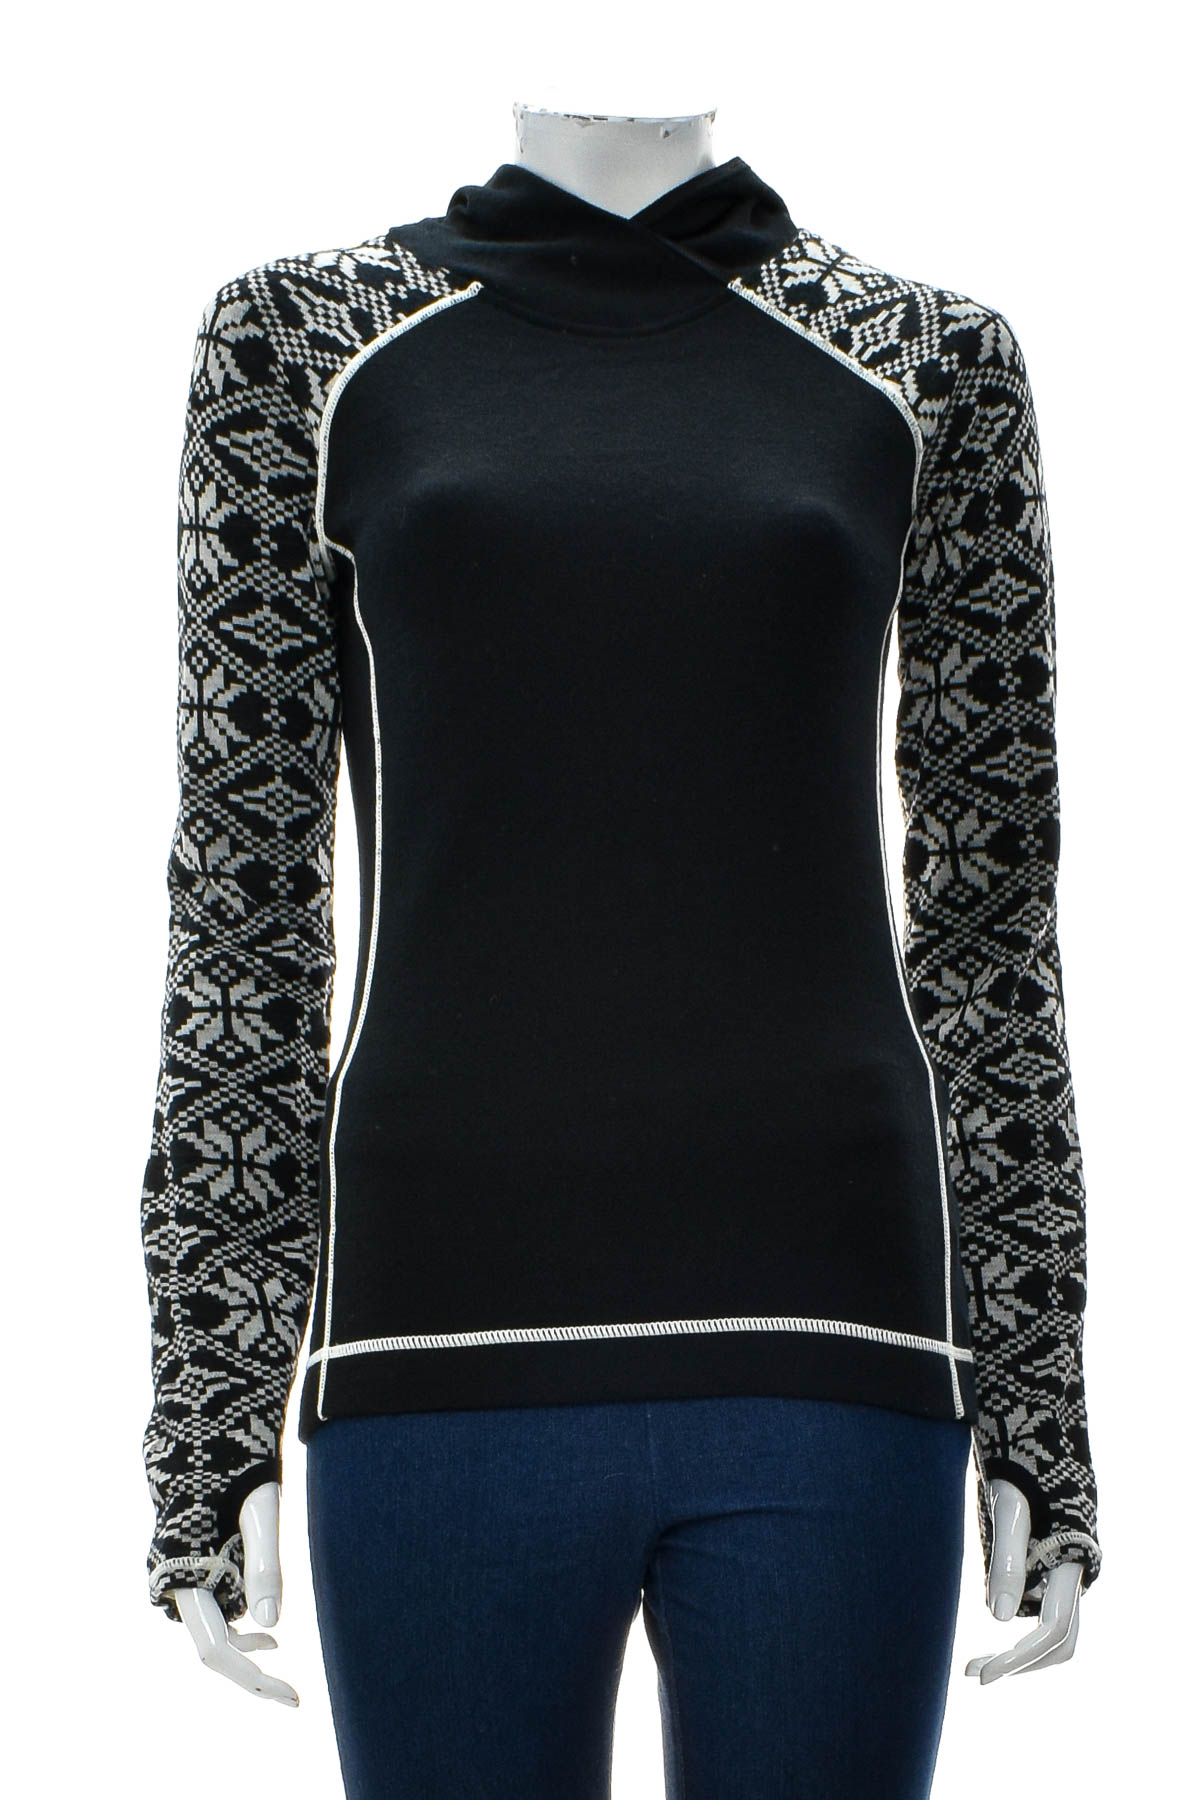 Дамска спортна блуза - Telluride Clothing Company - 0